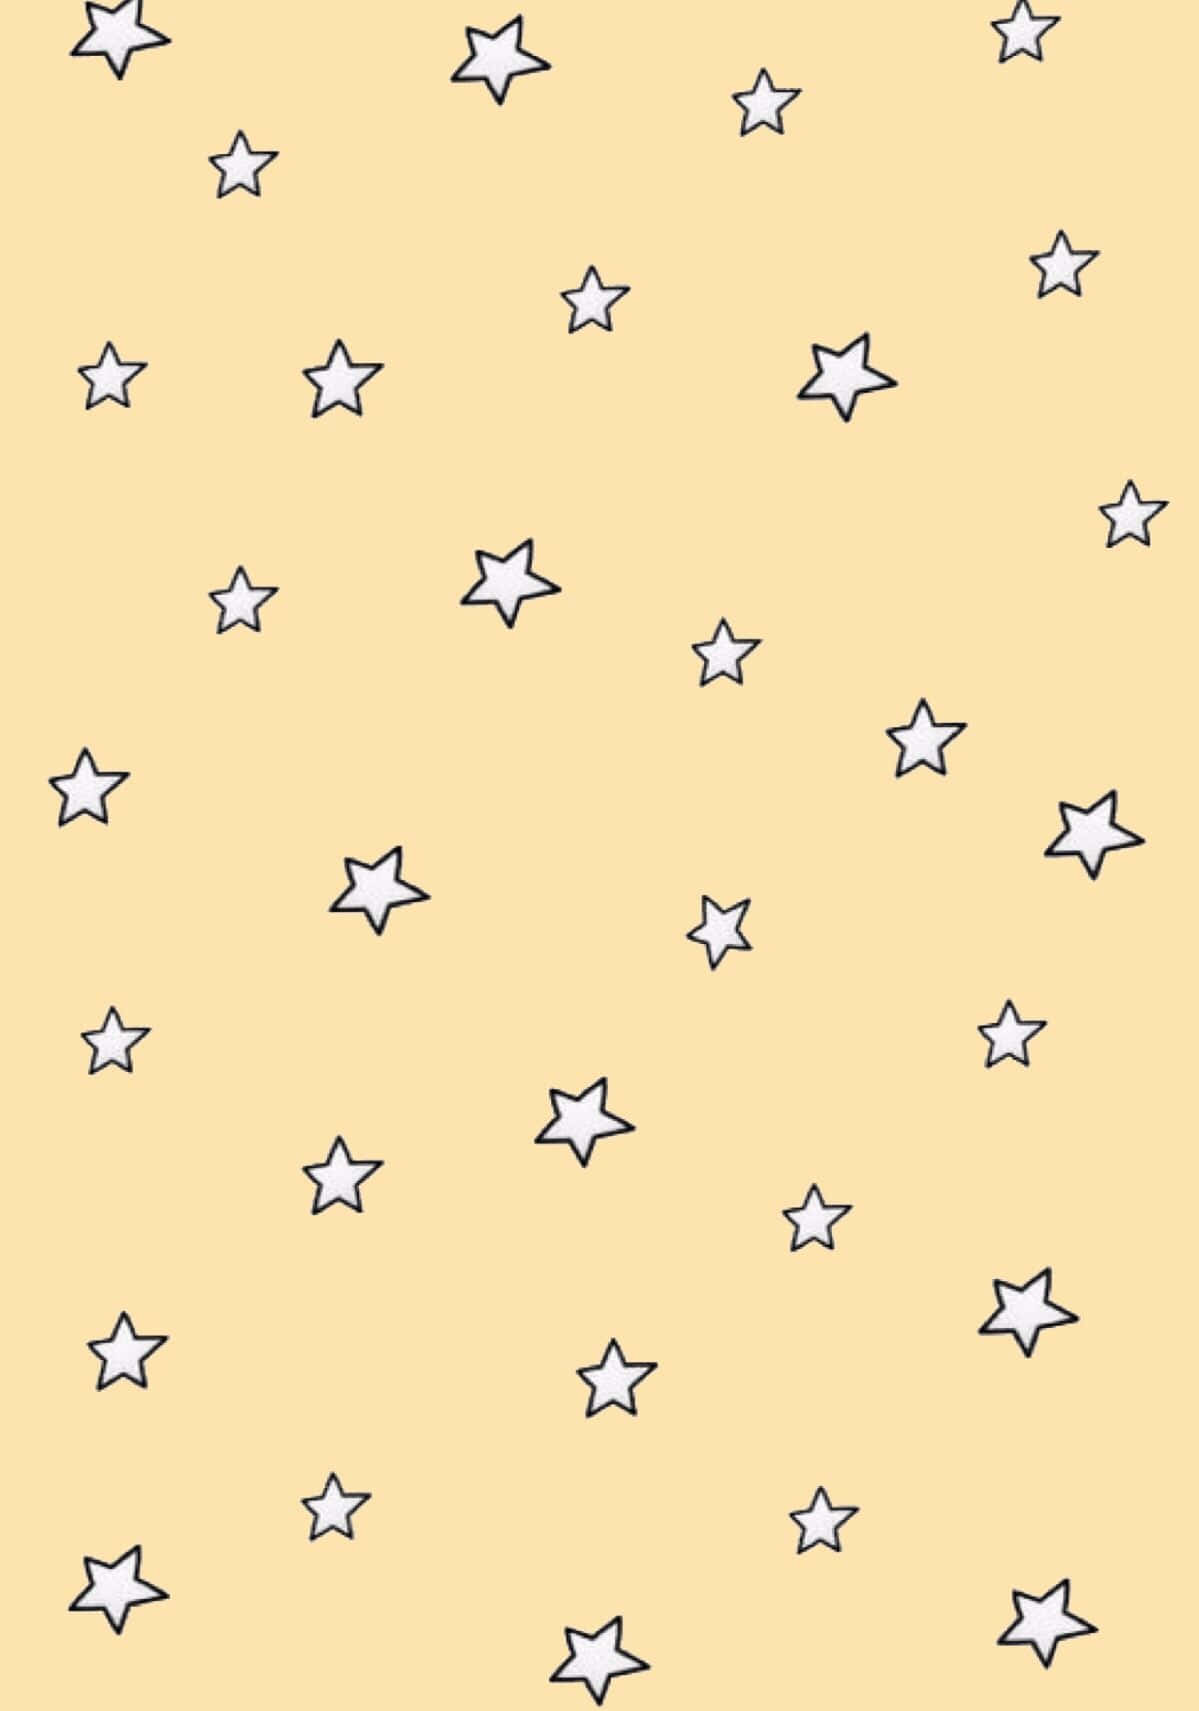 Aesthetic Star 1199 X 1711 Wallpaper